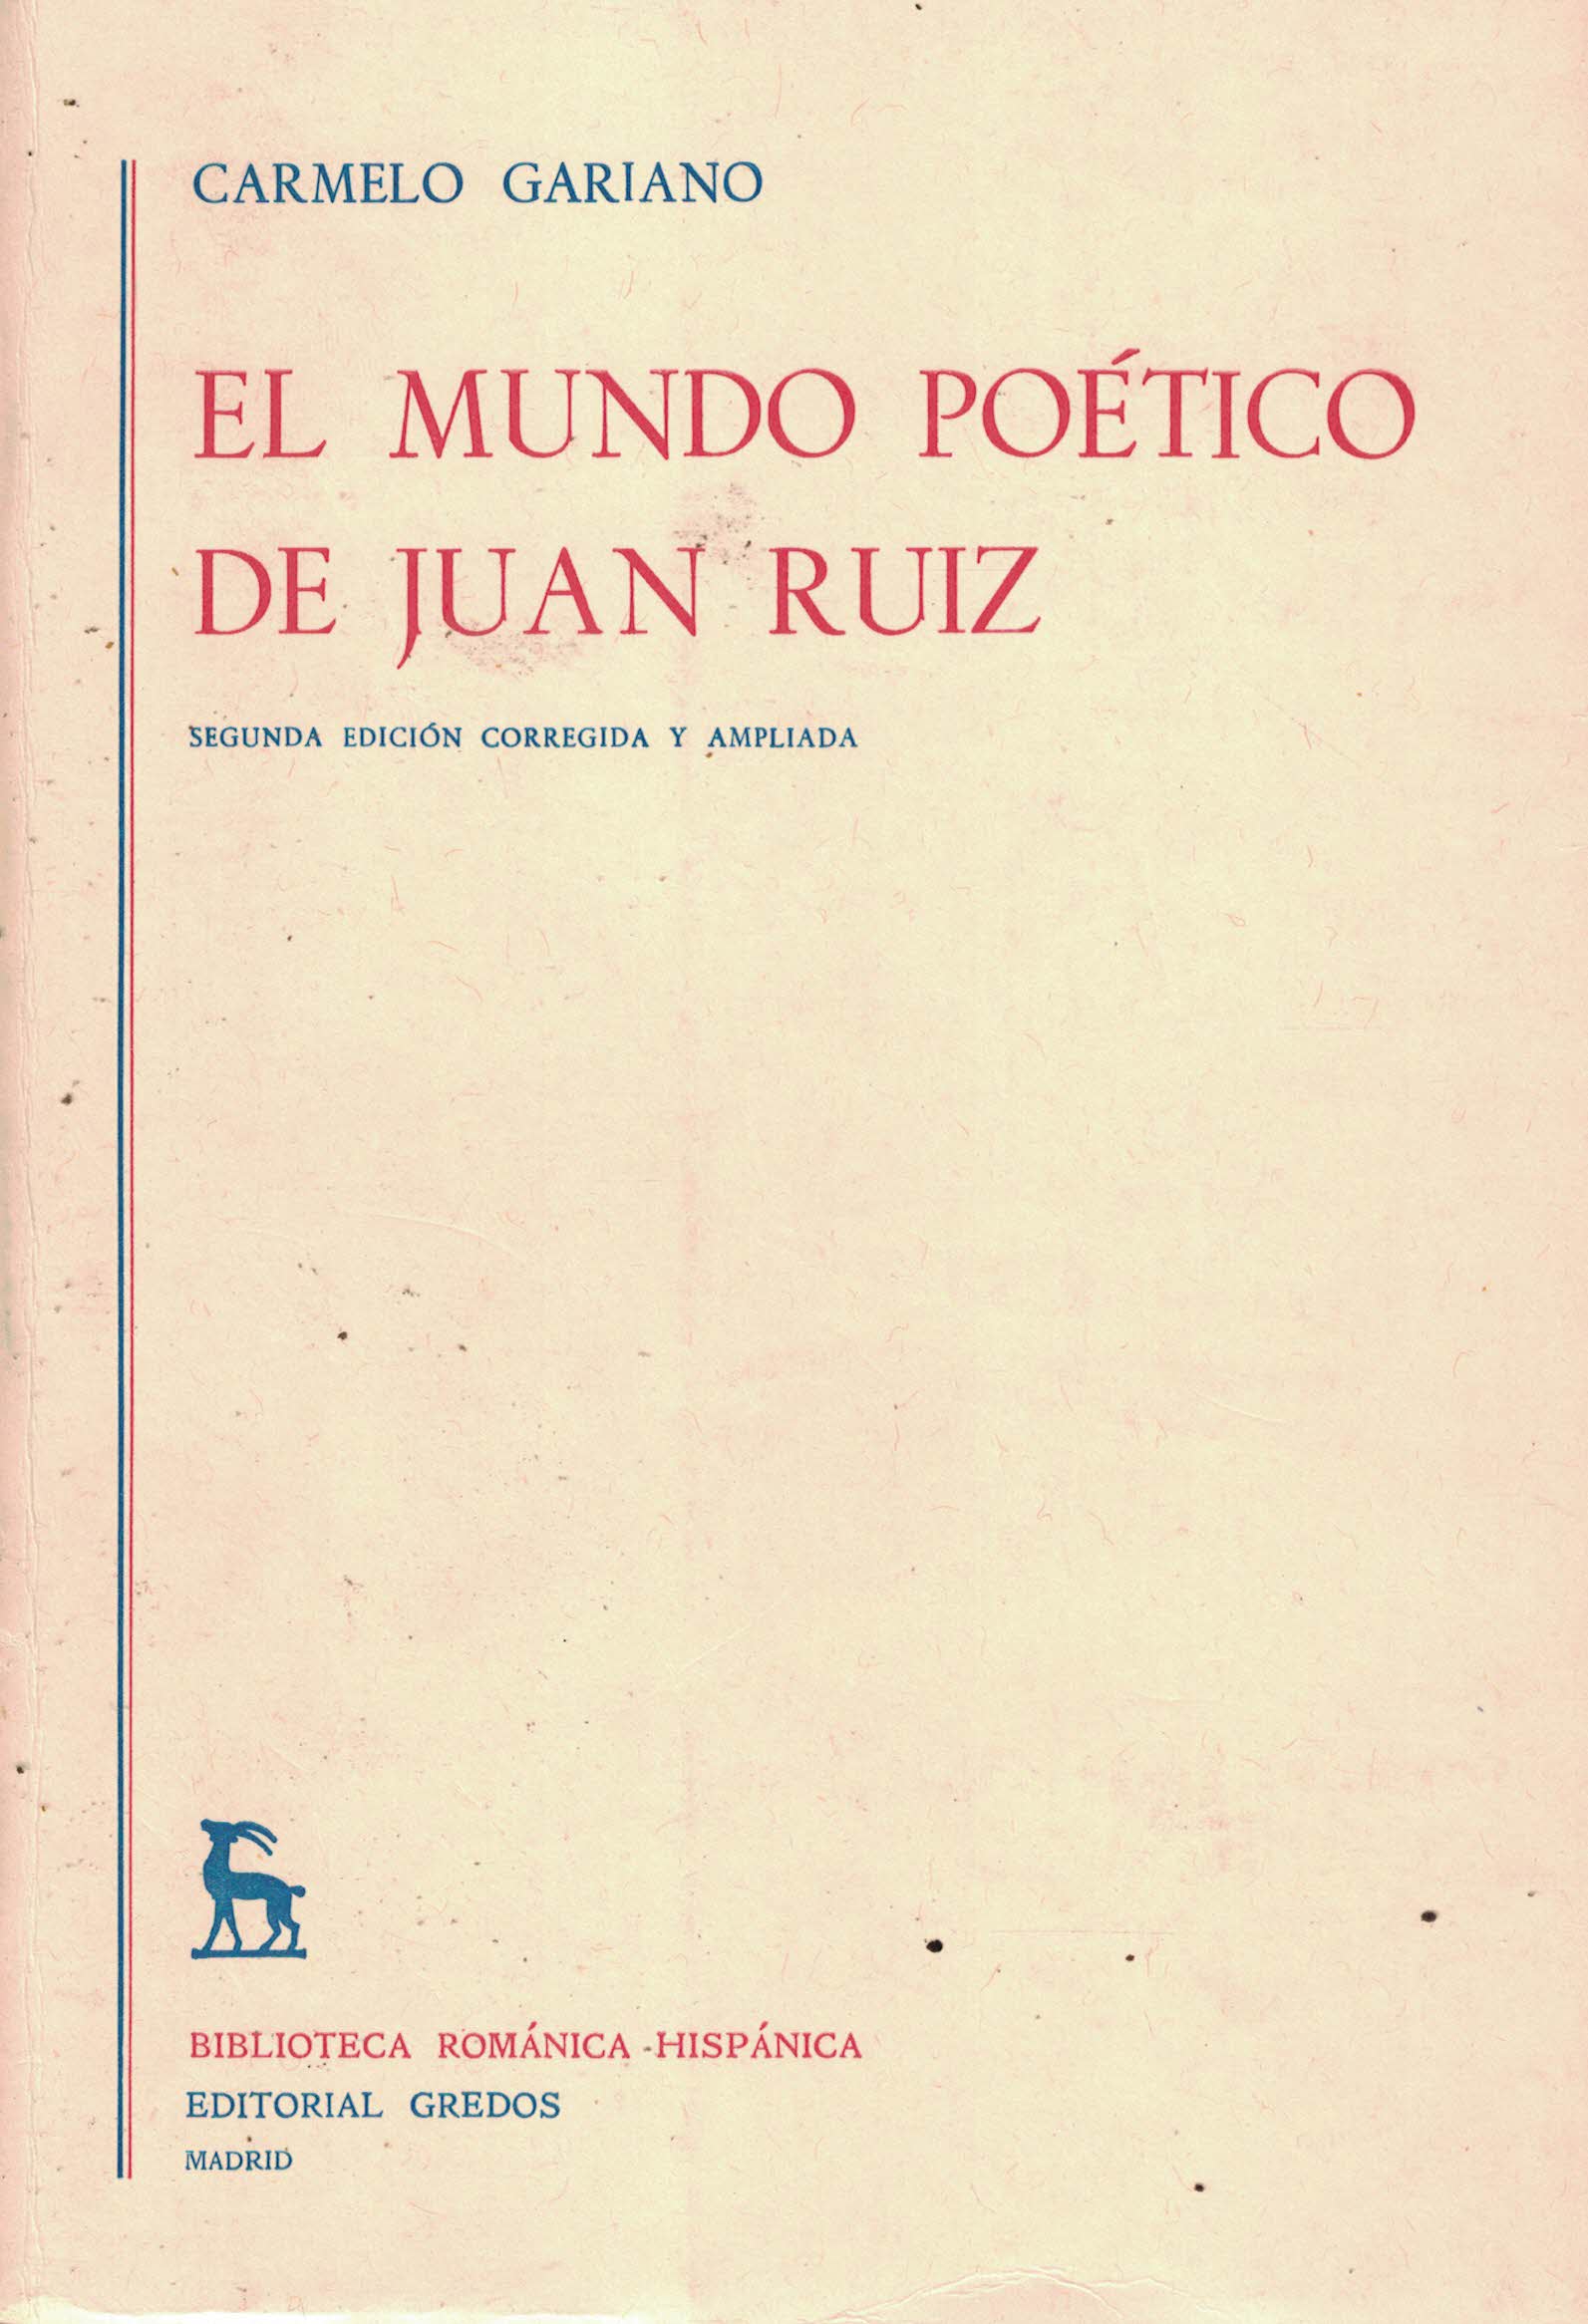 El mundo poético de Juan Ruiz